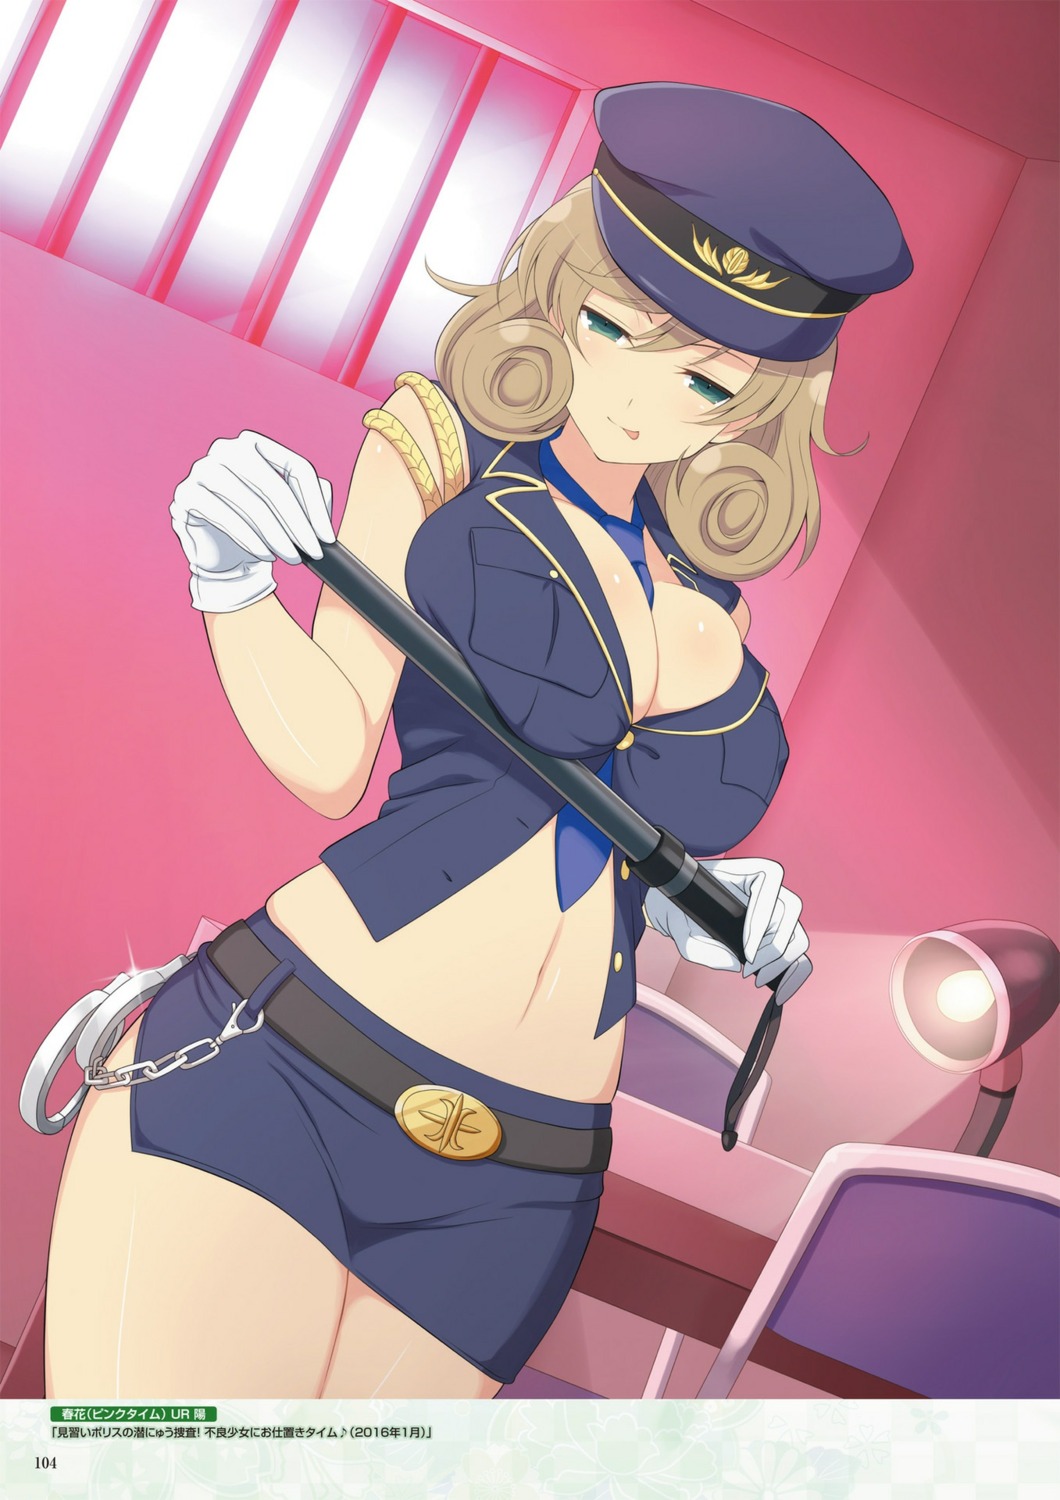 haruka_(senran_kagura) police_uniform senran_kagura senran_kagura:_new_wave uniform